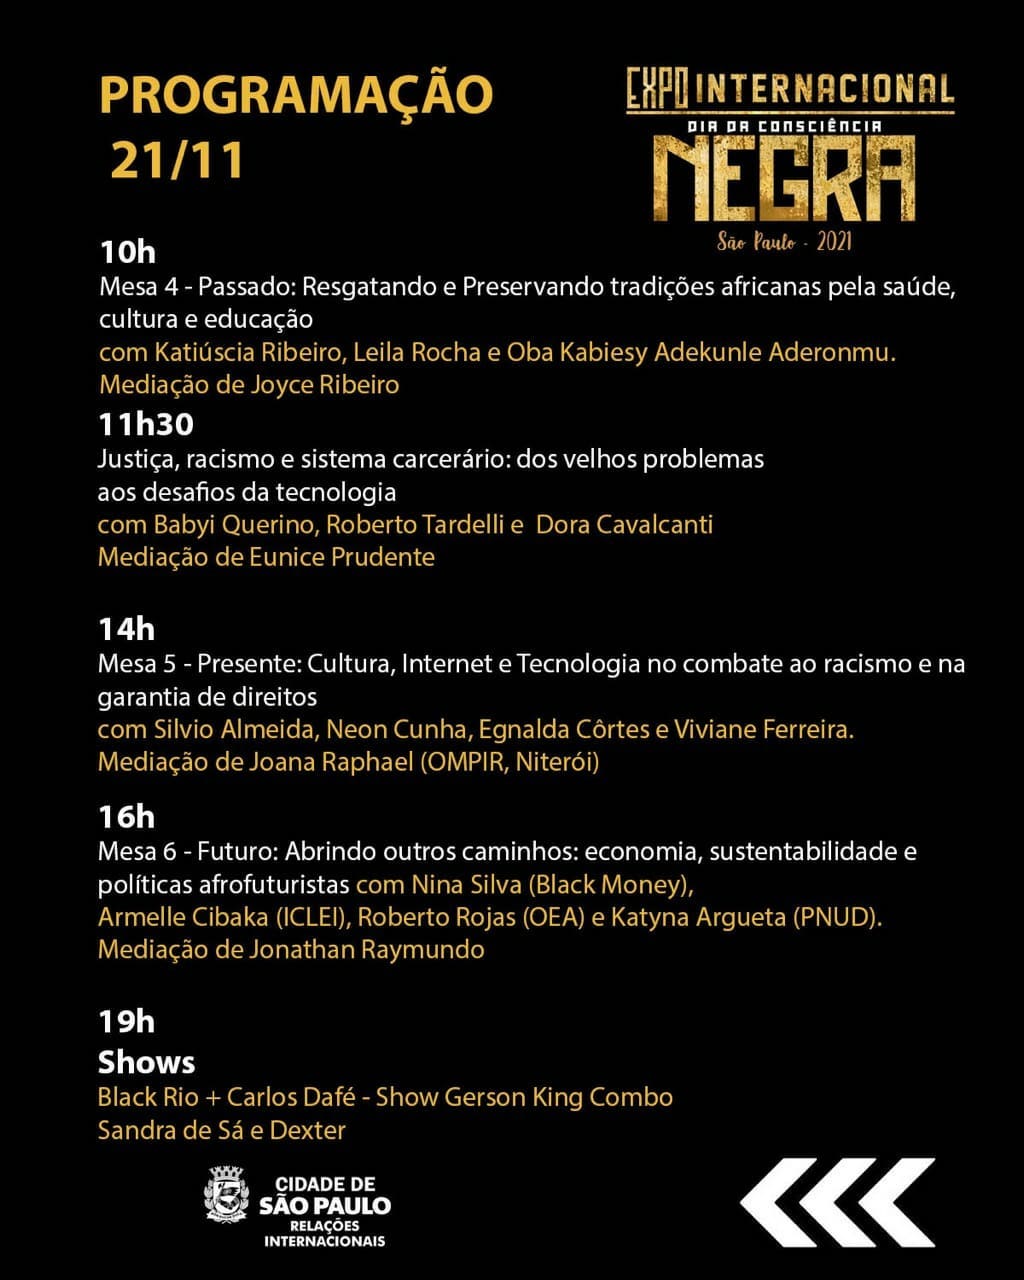 Programação da Expo Internacional Dia da Consciência Negra de São Paulo. Foto: Reprodução/Instagram